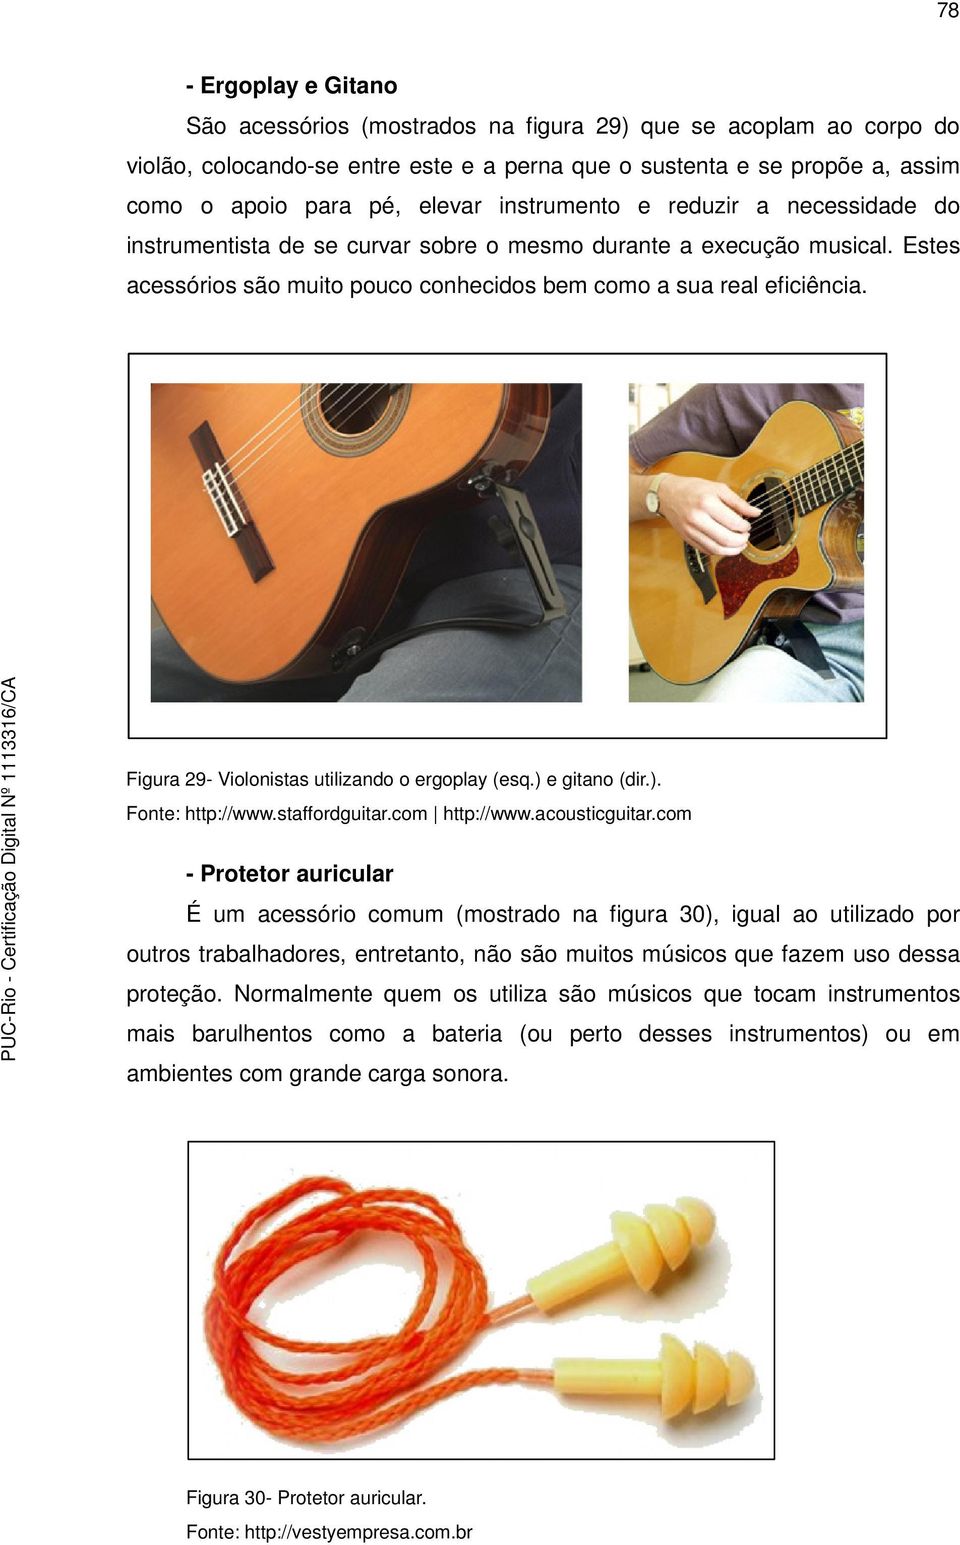 Figura 29- Violonistas utilizando o ergoplay (esq.) e gitano (dir.). Fonte: http://www.staffordguitar.com http://www.acousticguitar.